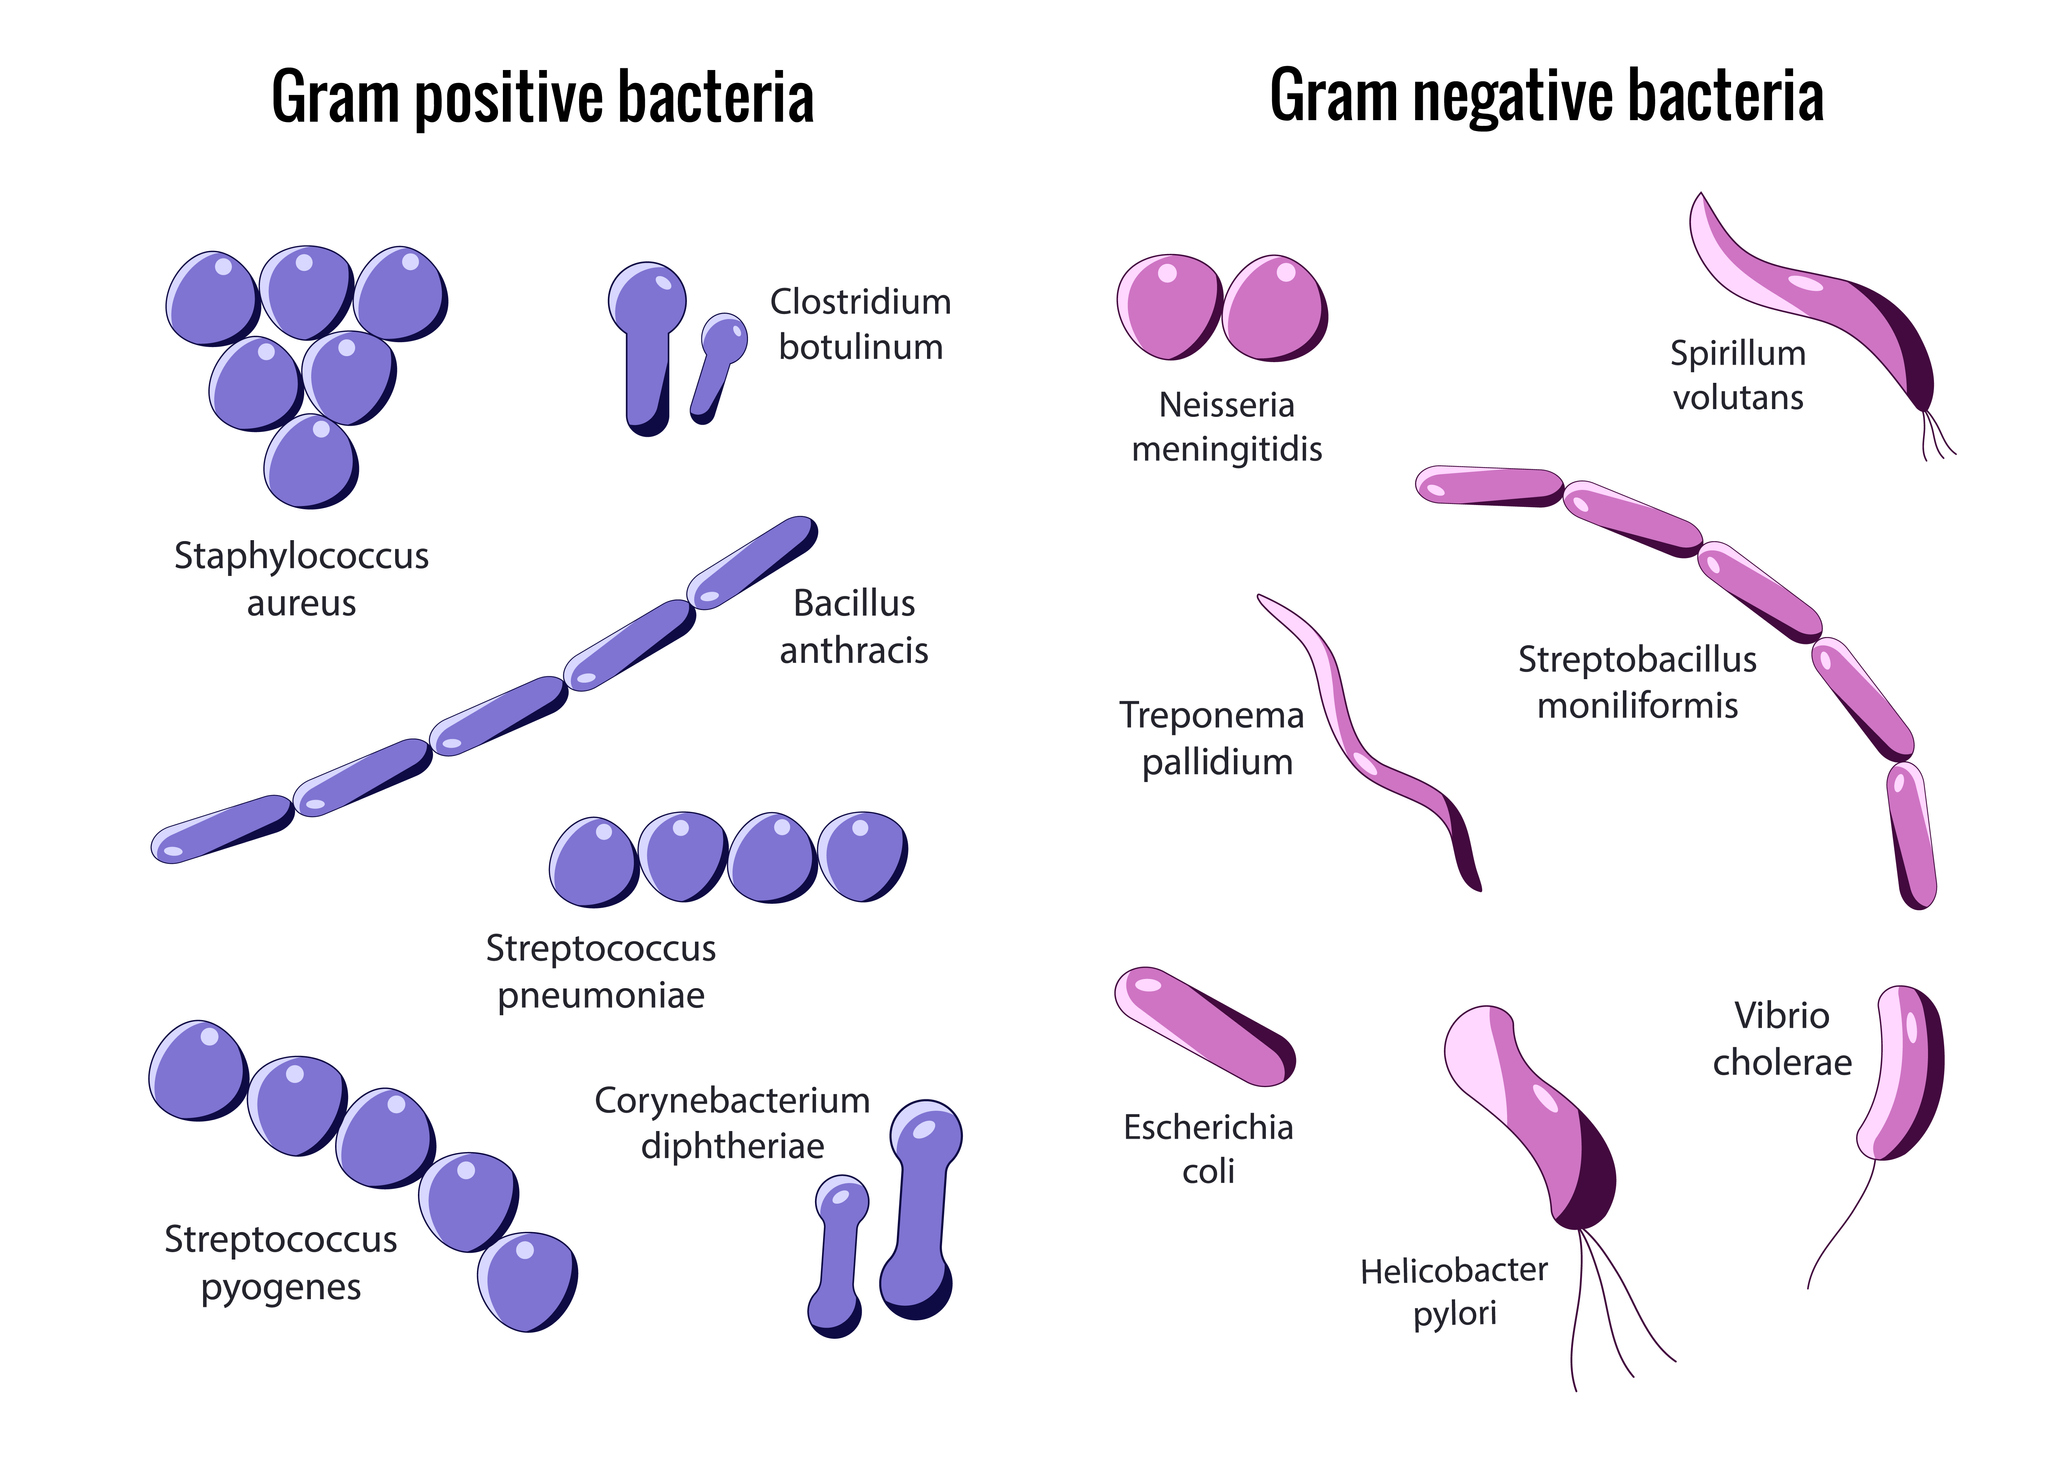 Einteilung in grampositive und gramnegative Bakterien